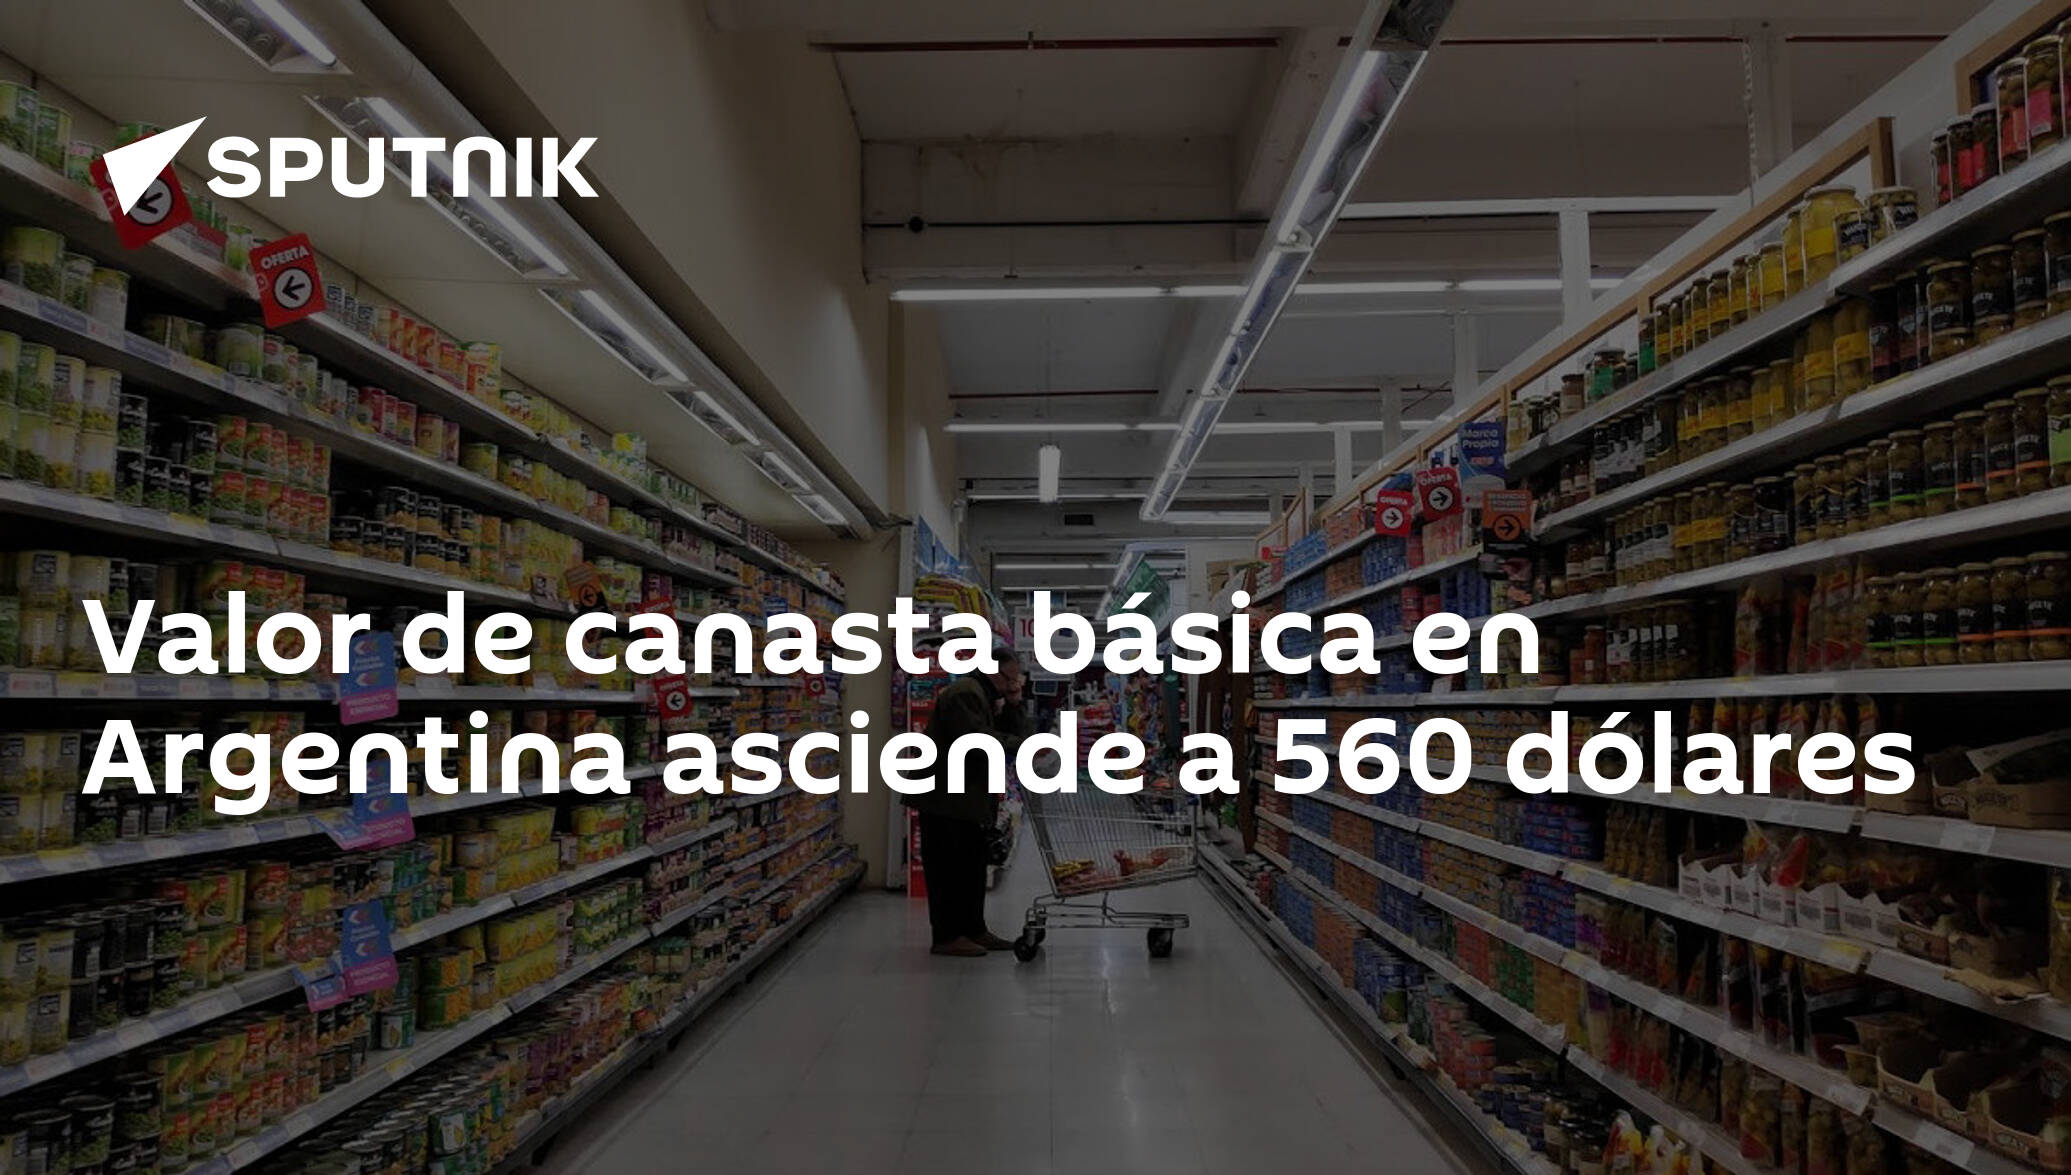 Valor De Canasta Básica En Argentina Asciende A 560 Dólares 22 08 2019 Sputnik Mundo